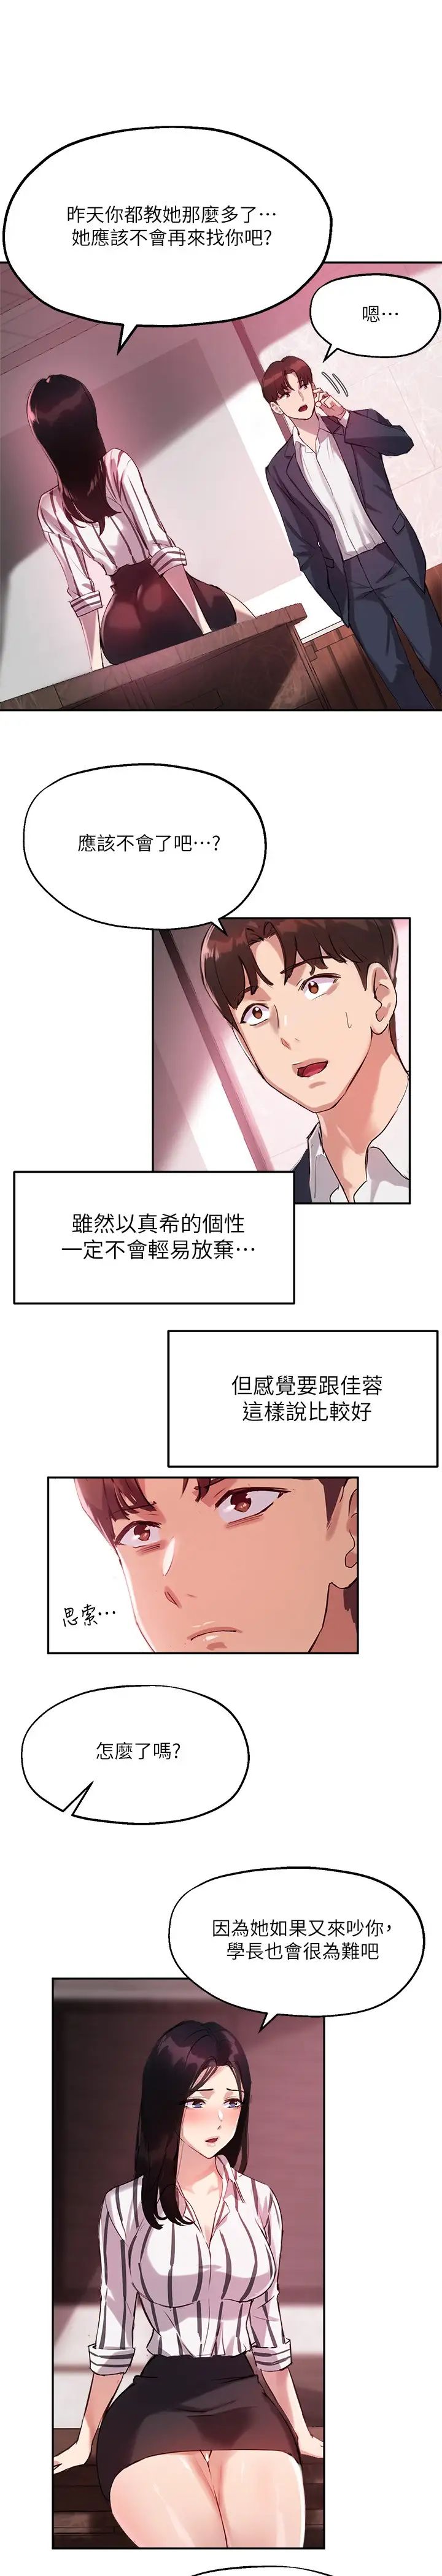 韩国污漫画 指導女大生 第11话研讨室不断传出的呻吟声 27